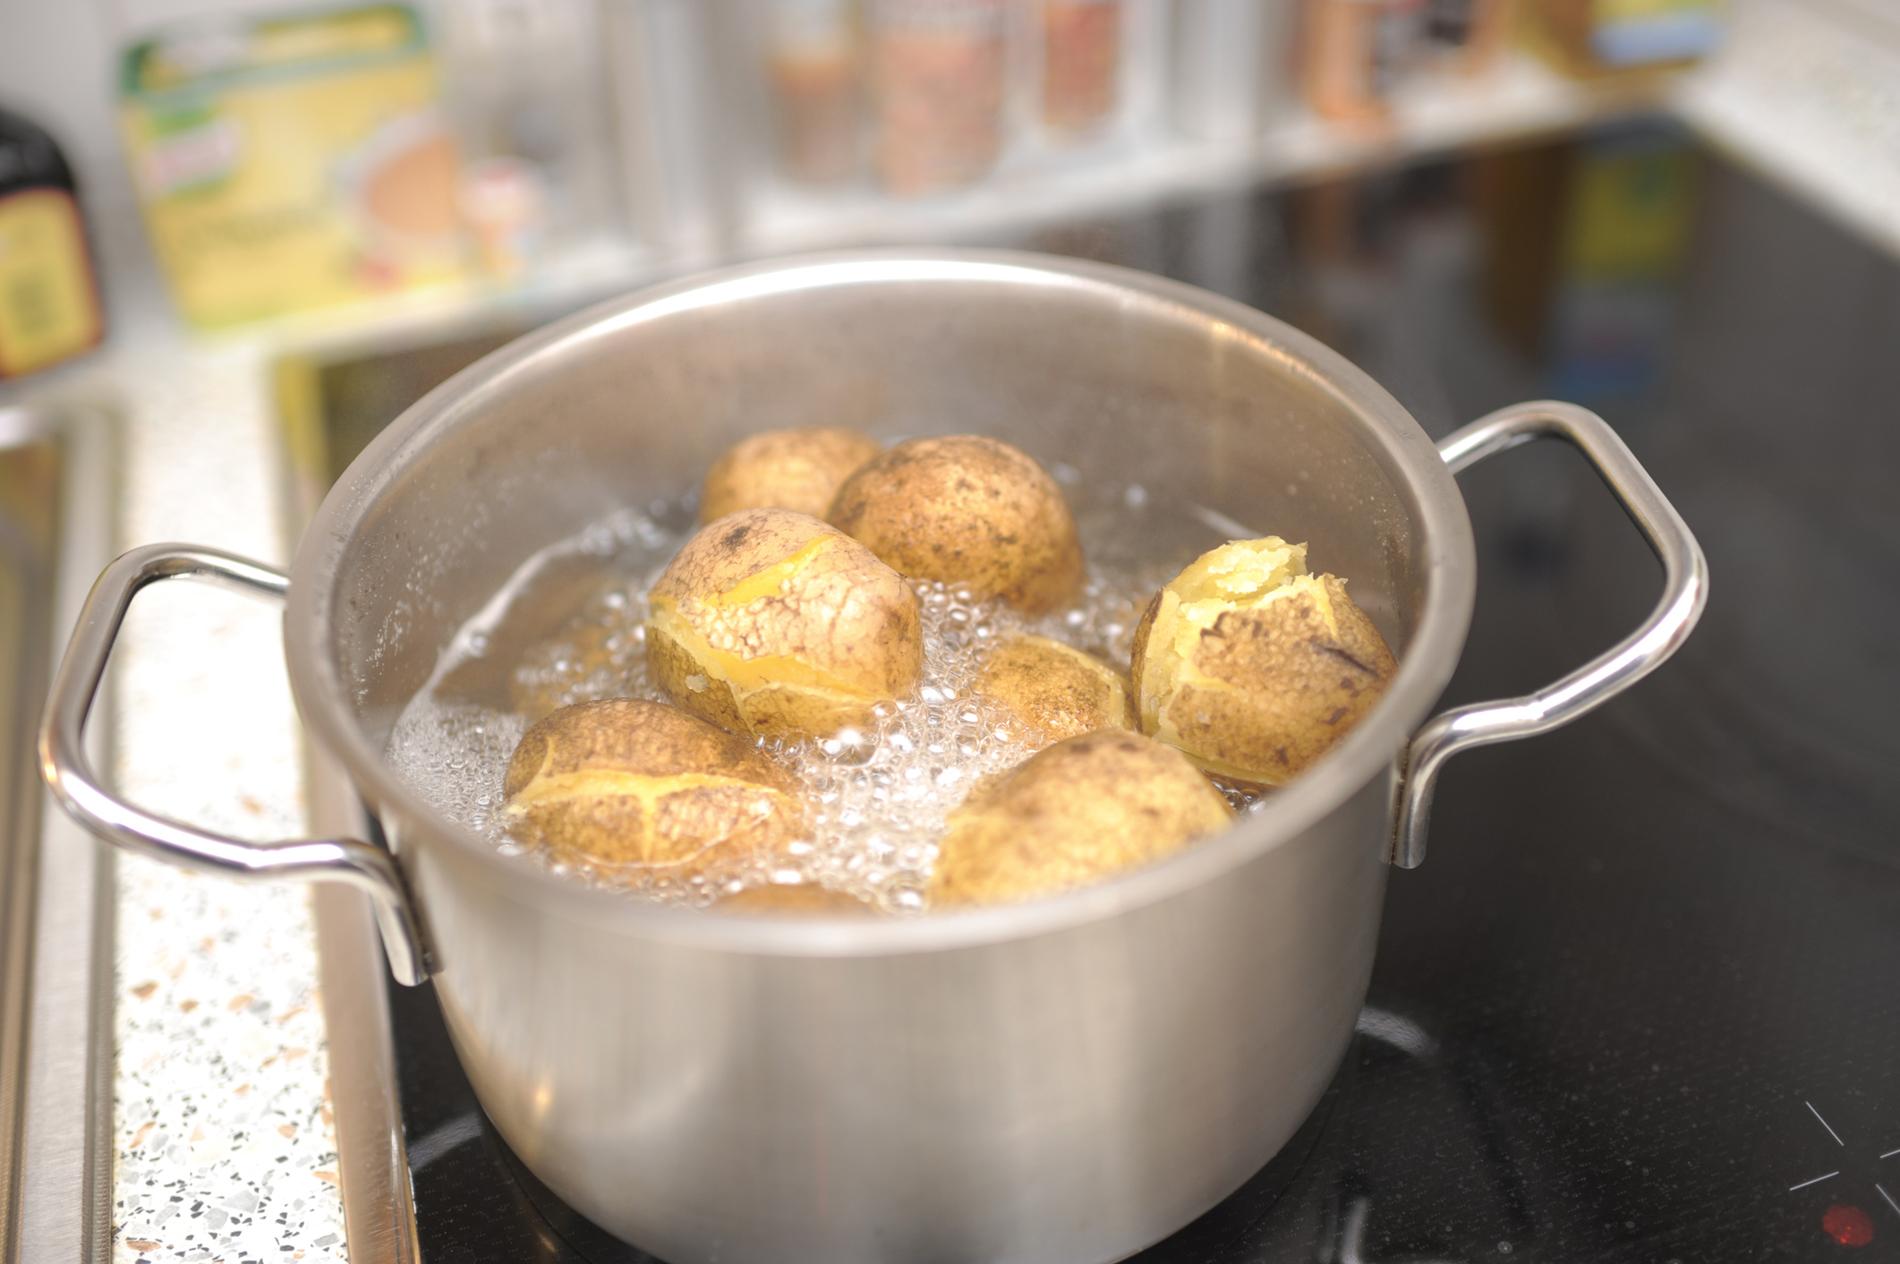 Картошка в кожуре в кастрюле. Картошка в кастрюле. Картофель кипит в кастрюле. Варка картофеля в кастрюле. Потато в кастрюле.